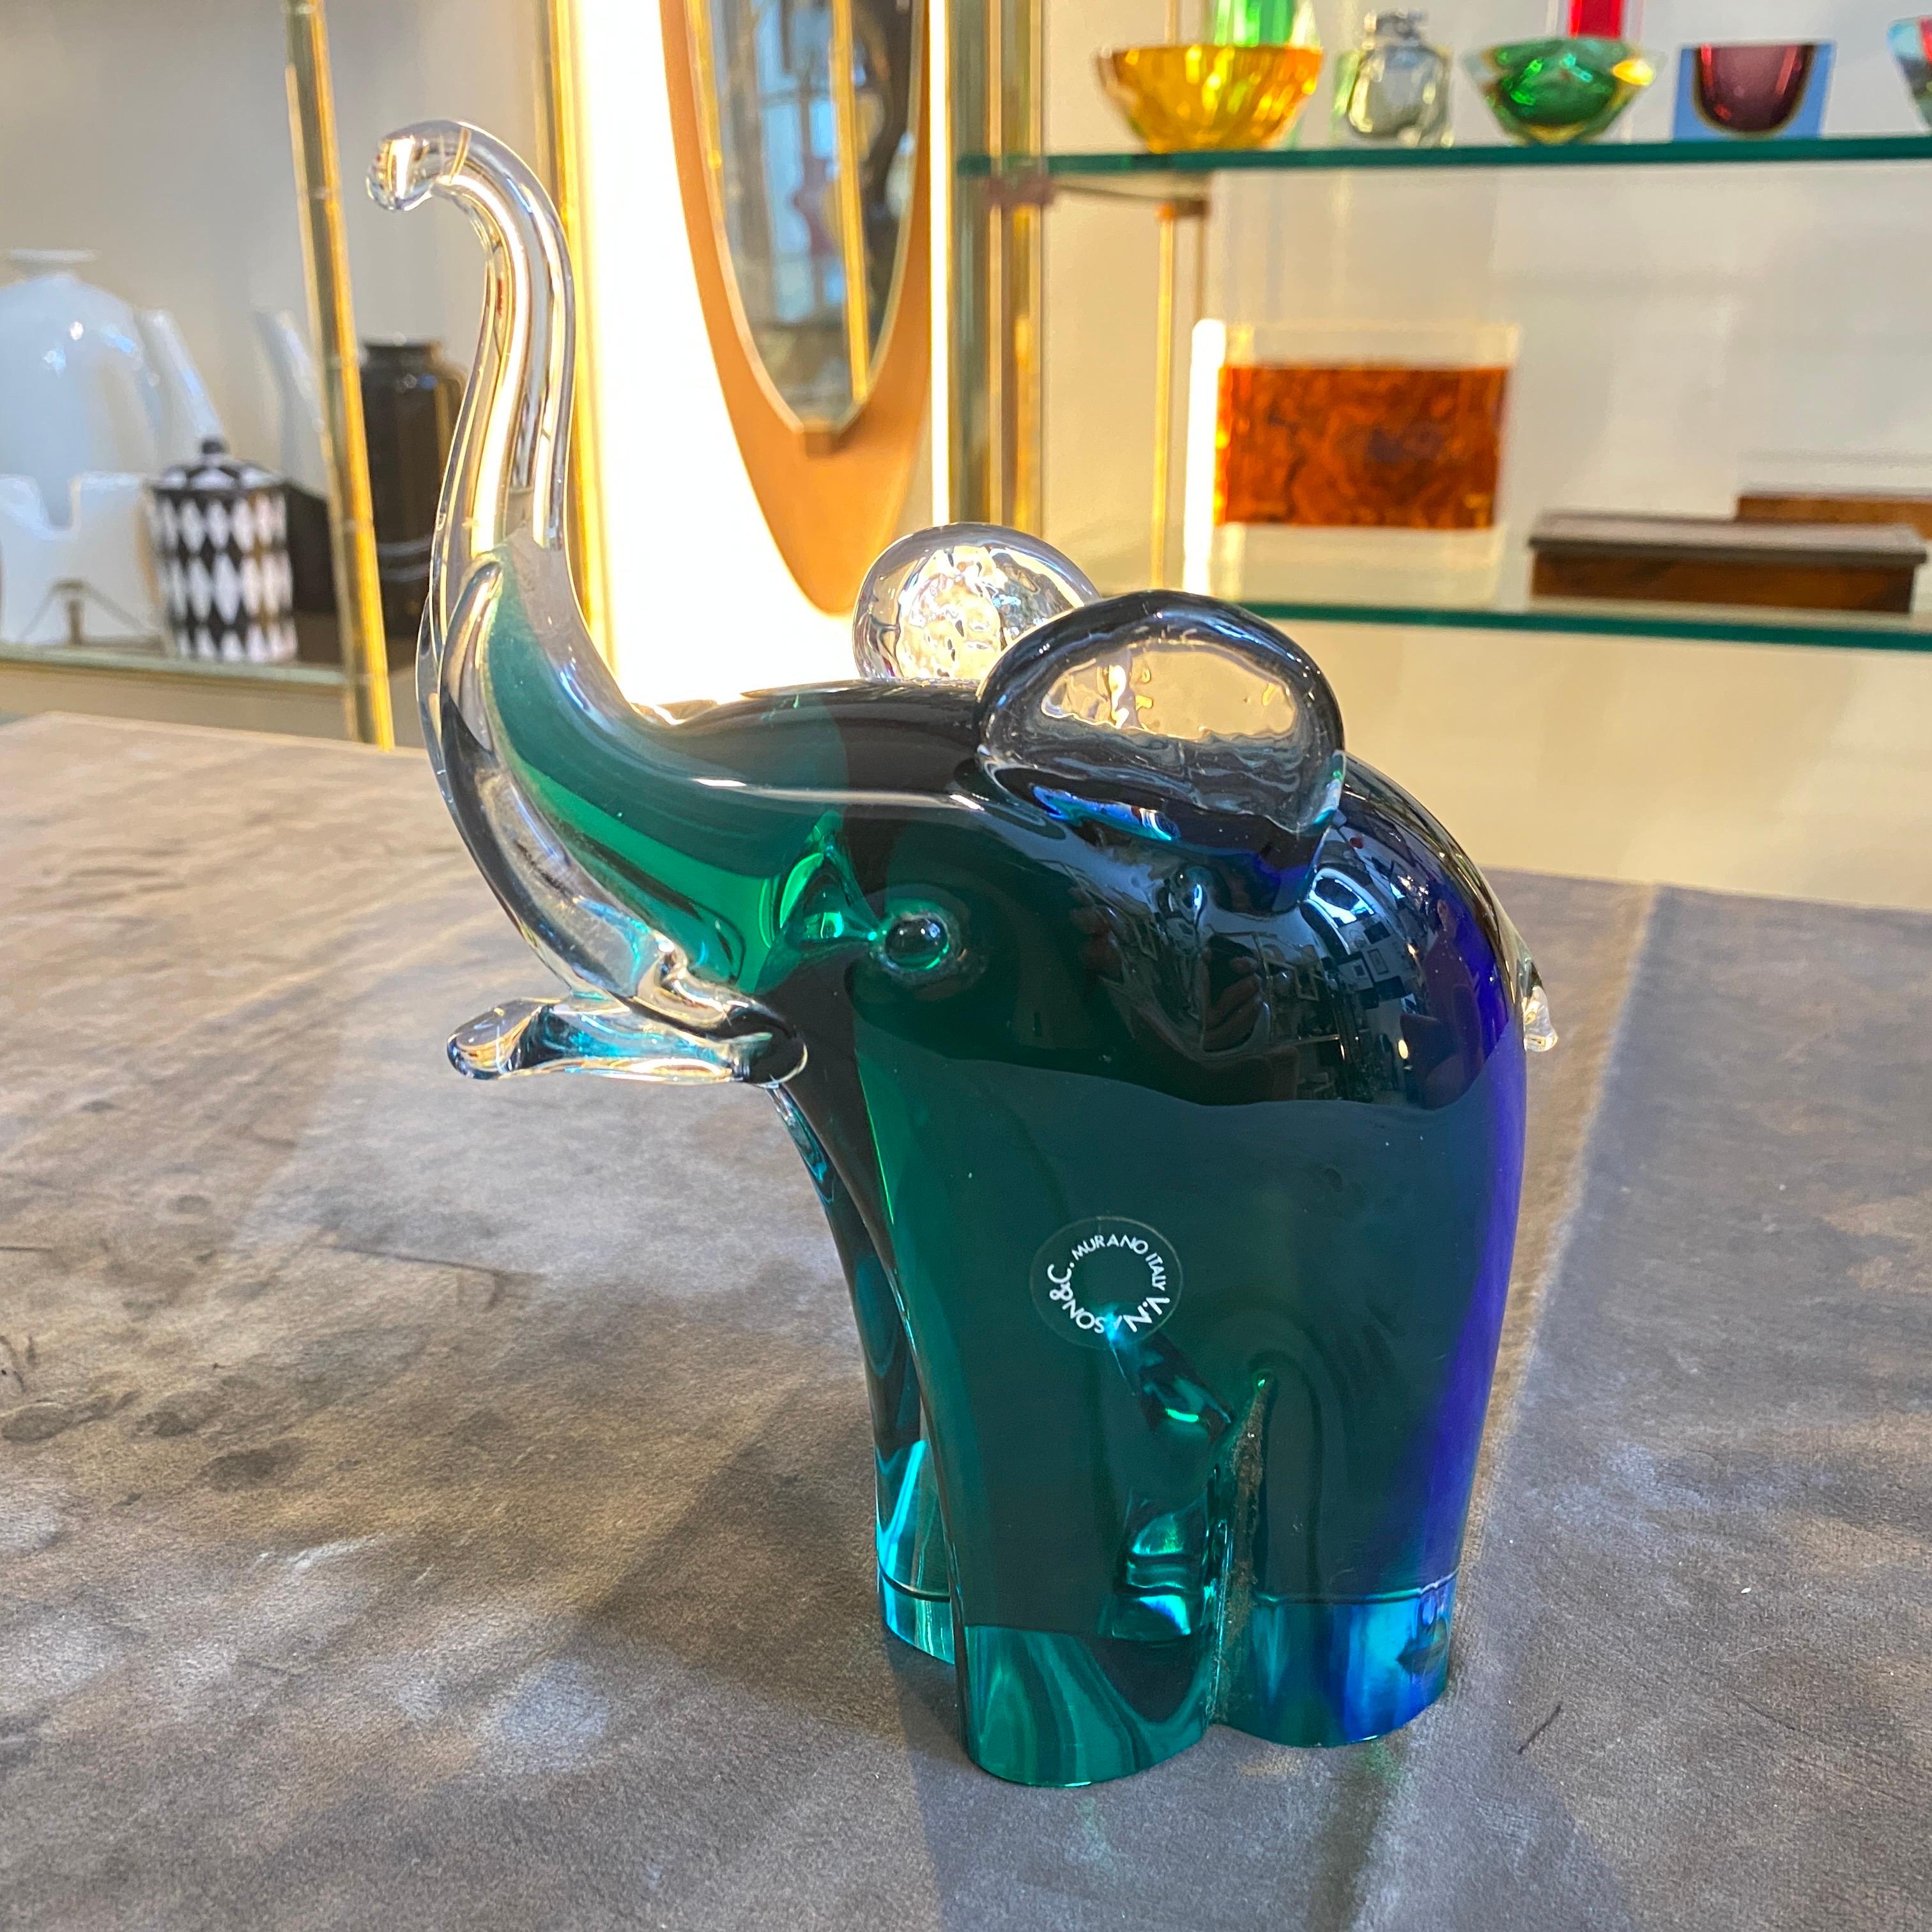 L'éléphant en verre de Murano est étiqueté sur un côté et il est en parfait état. L'éléphant bleu et vert en verre de Murano conçu et fabriqué par Vincenzo Nason est une œuvre d'art étonnante qui illustre le savoir-faire artistique et artisanal du